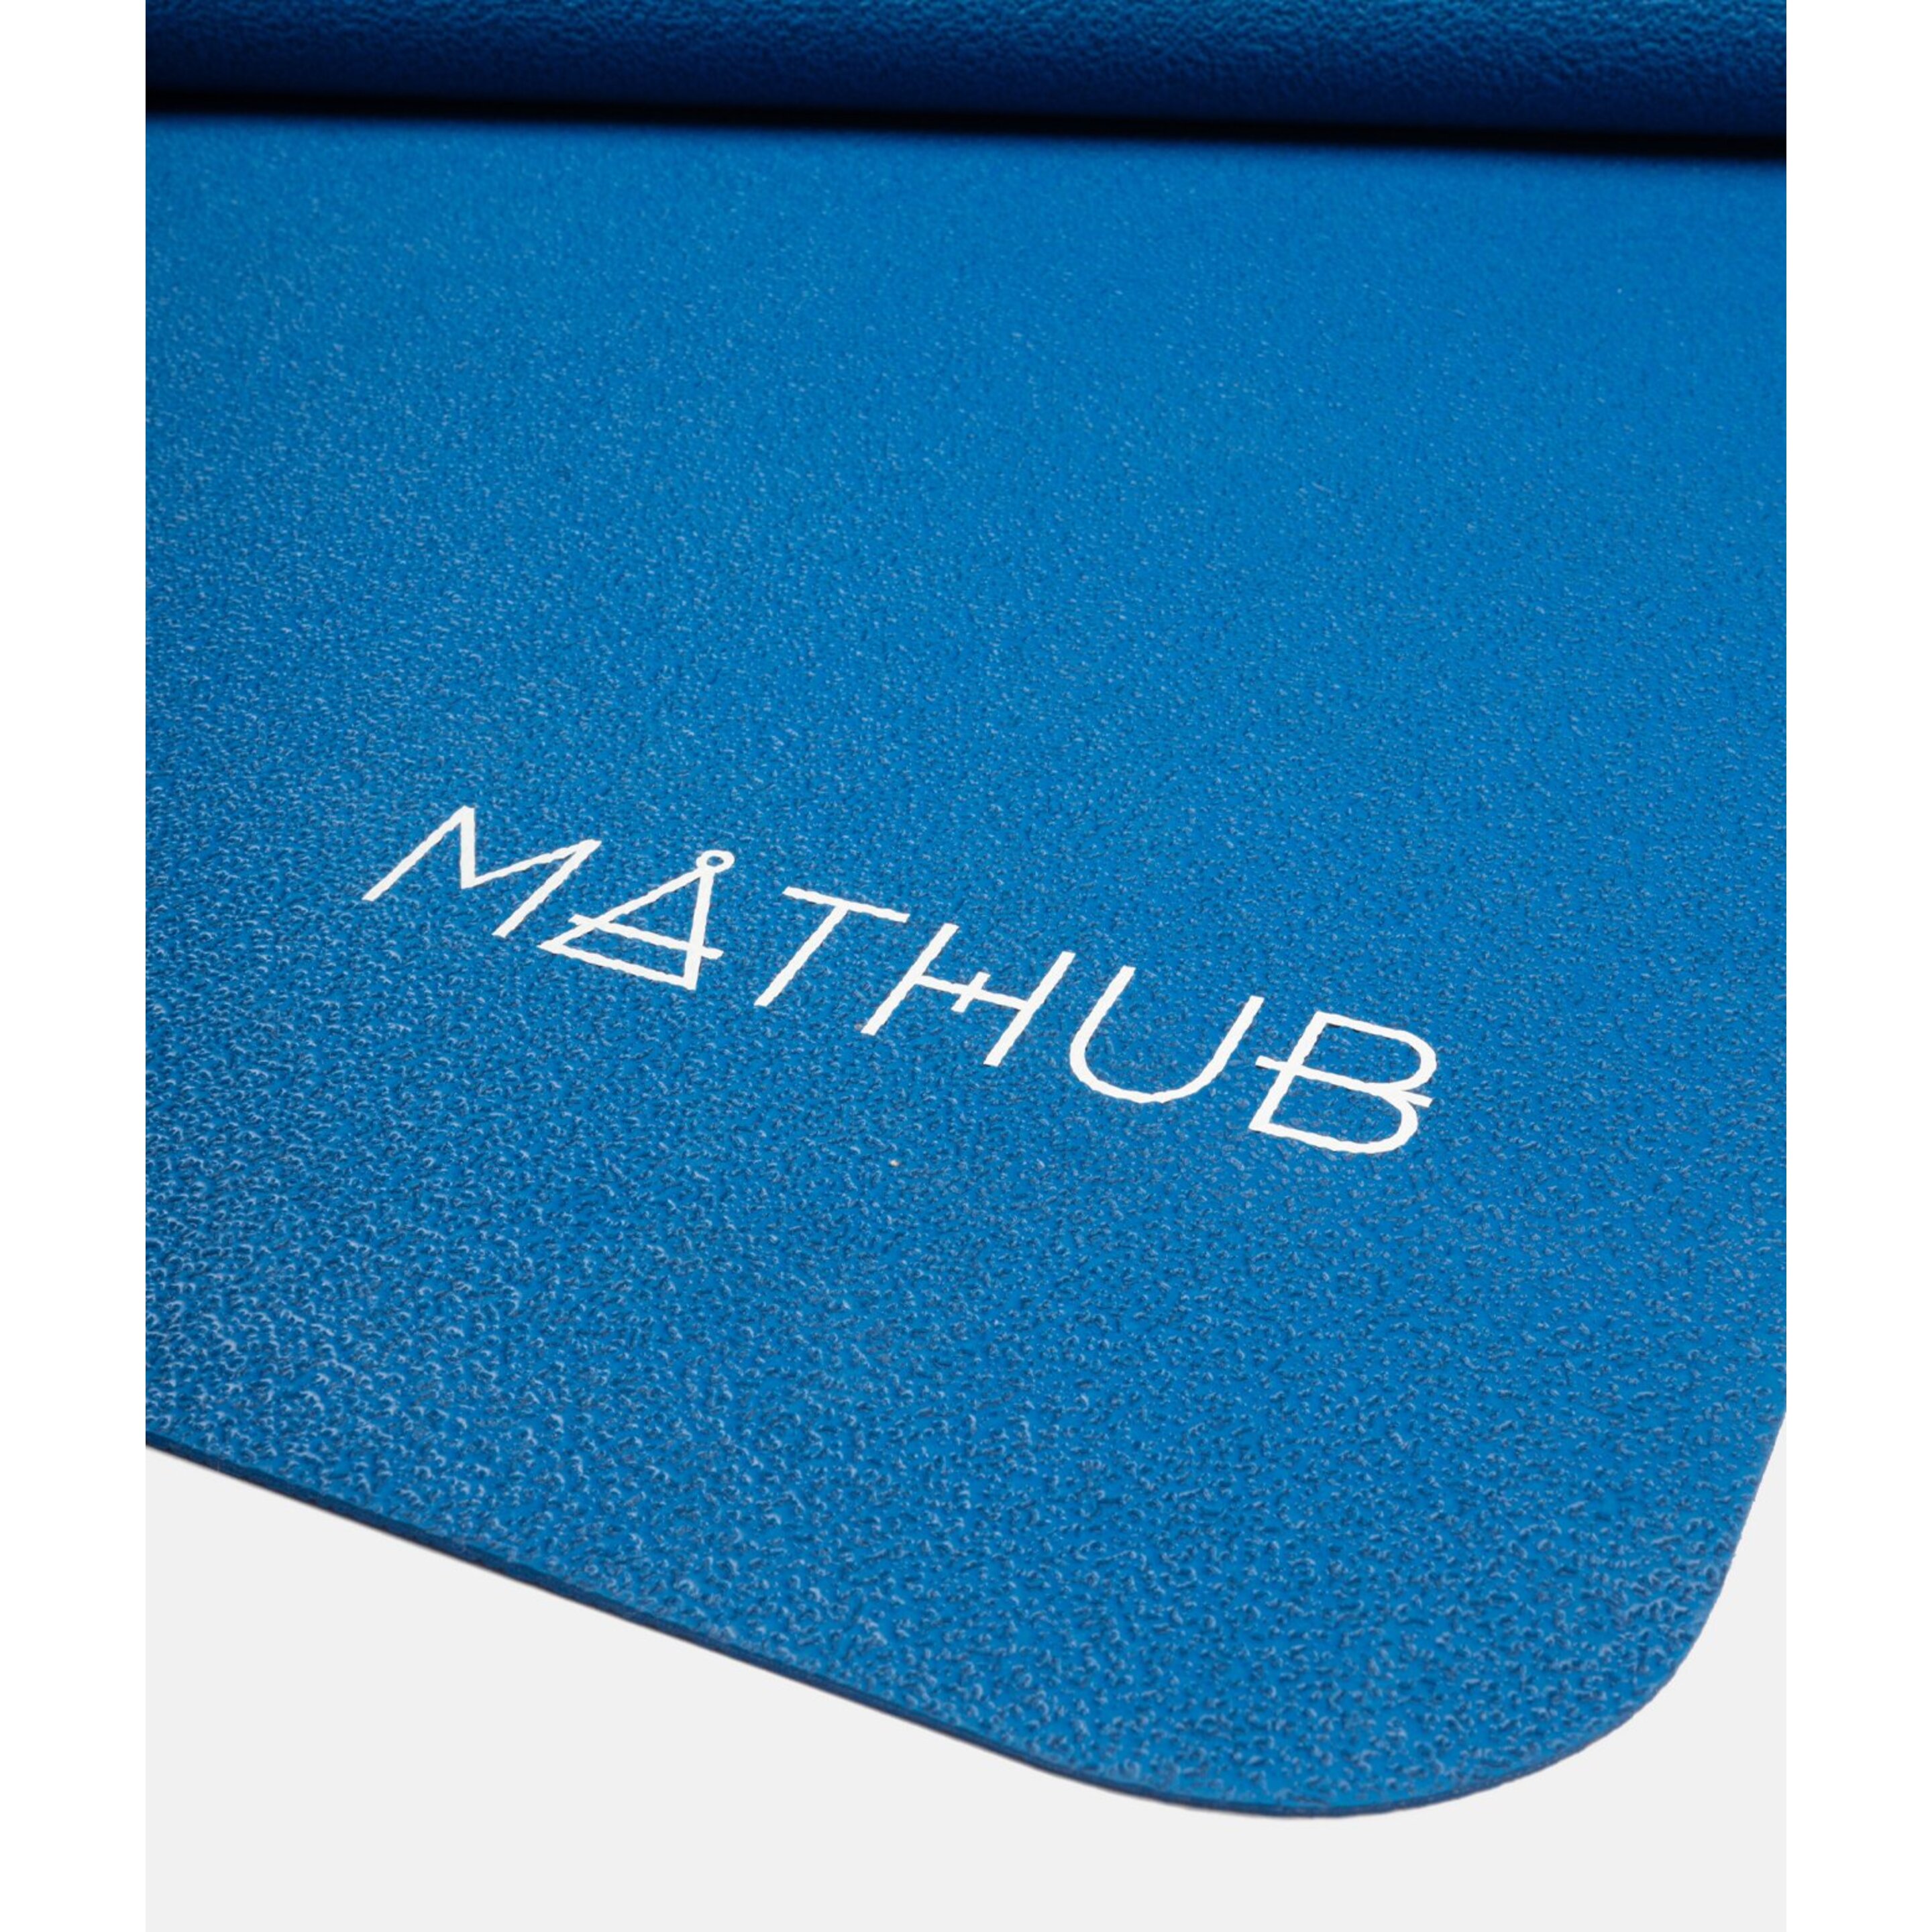 Mat Mathub Deluxe